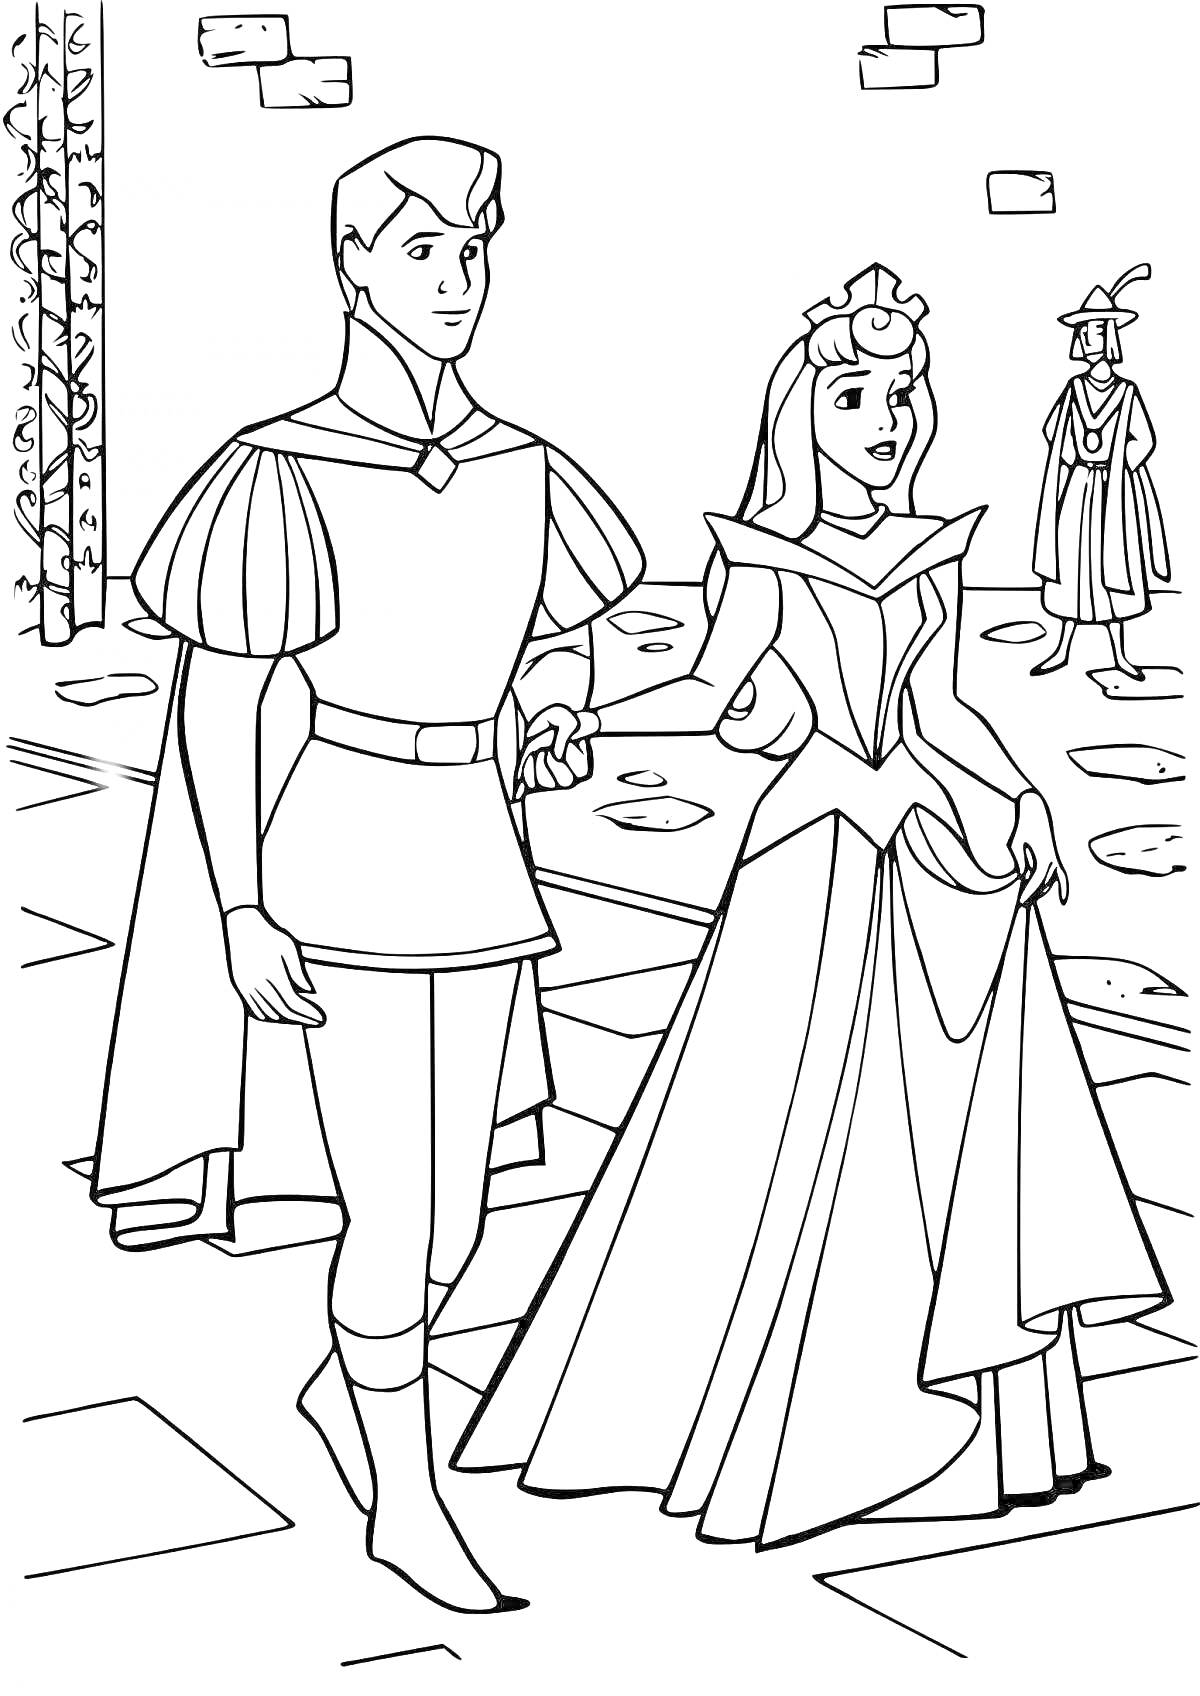 На раскраске изображено: Принц, Принцесса, Замок, Платье, Шляпа, Руки, Человек, Из сказок, Прогулка